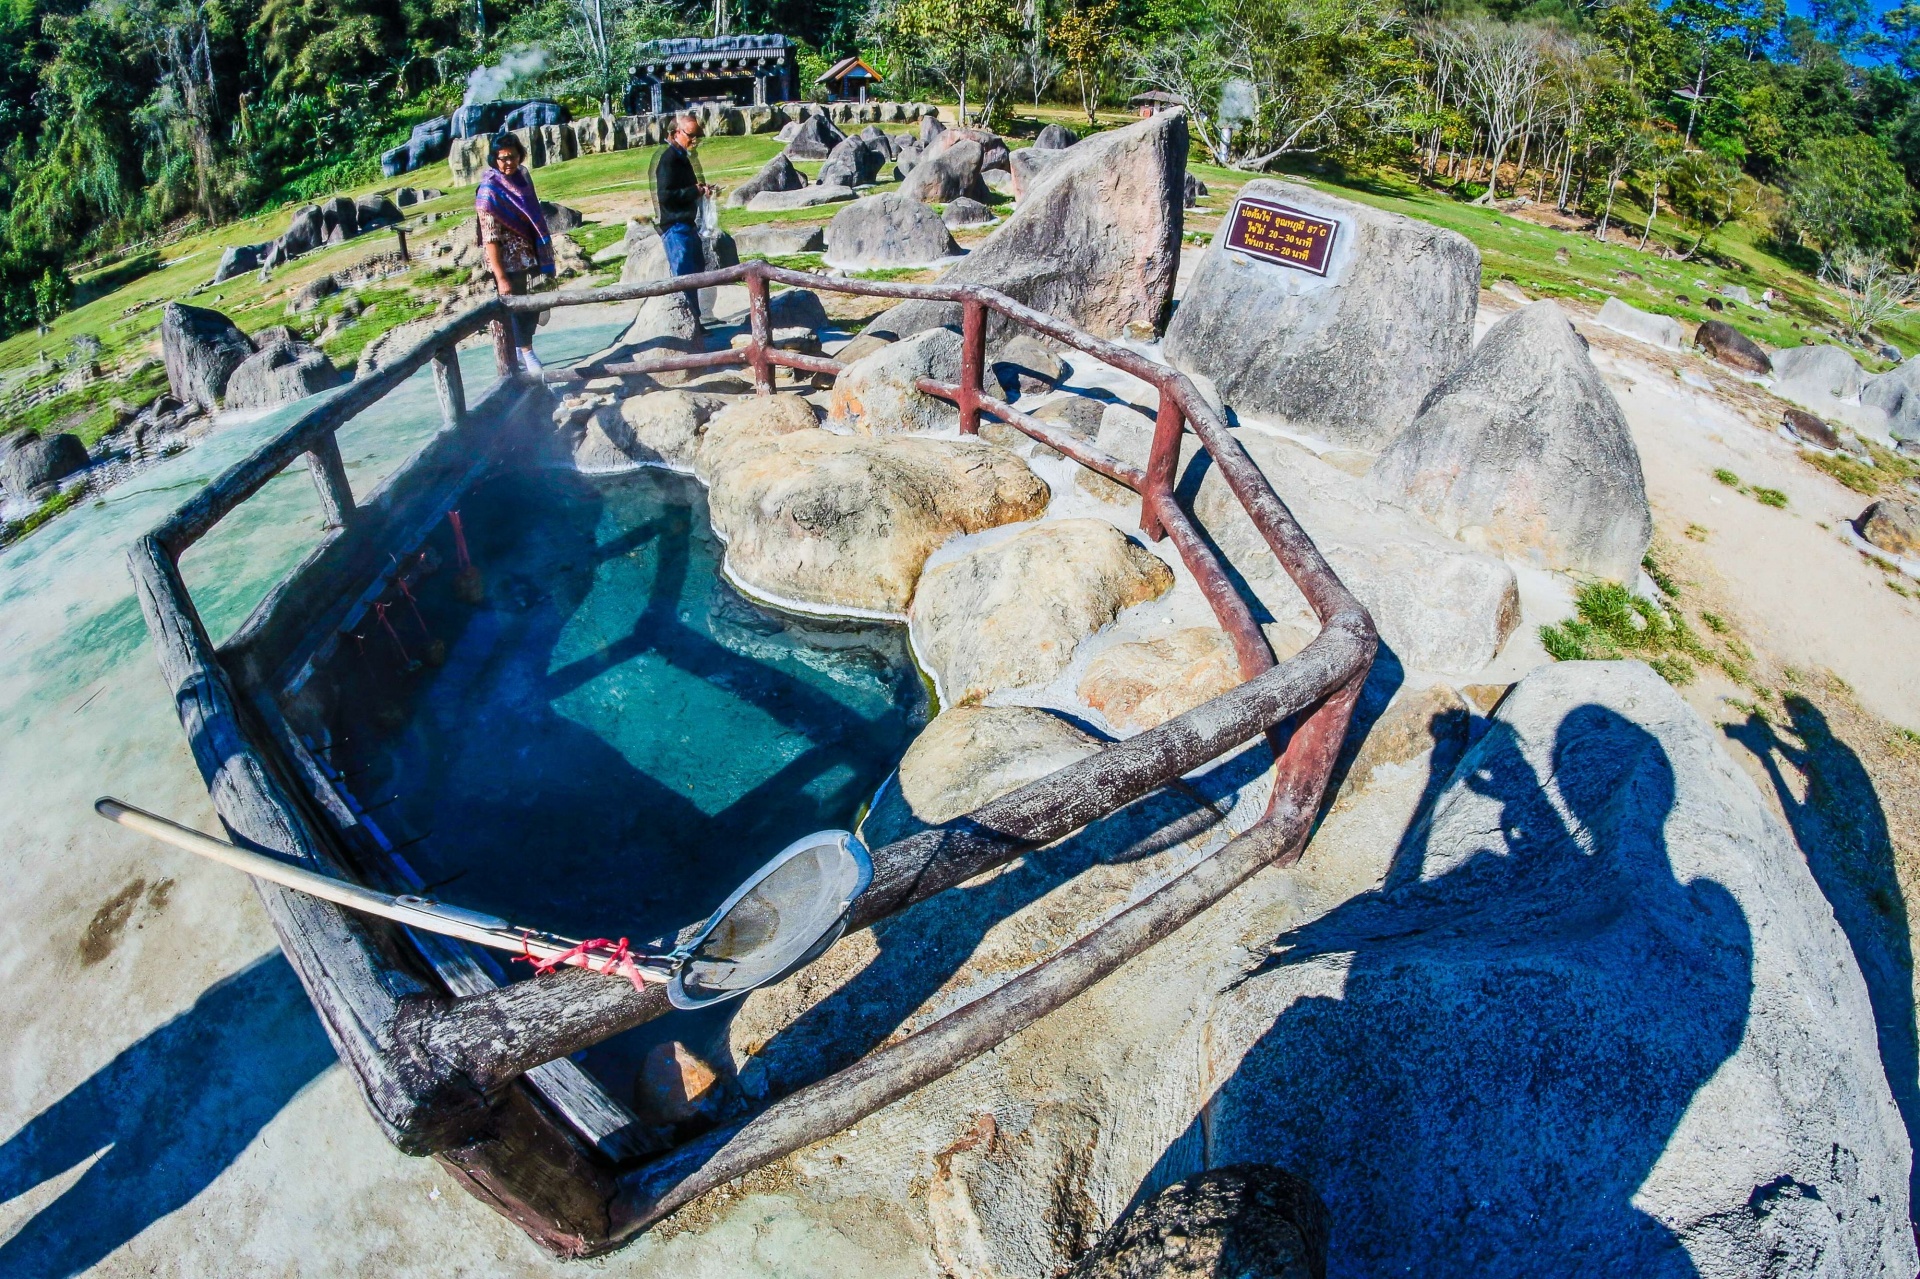 Fang Hot Springs , Chiang Mai , Thailand